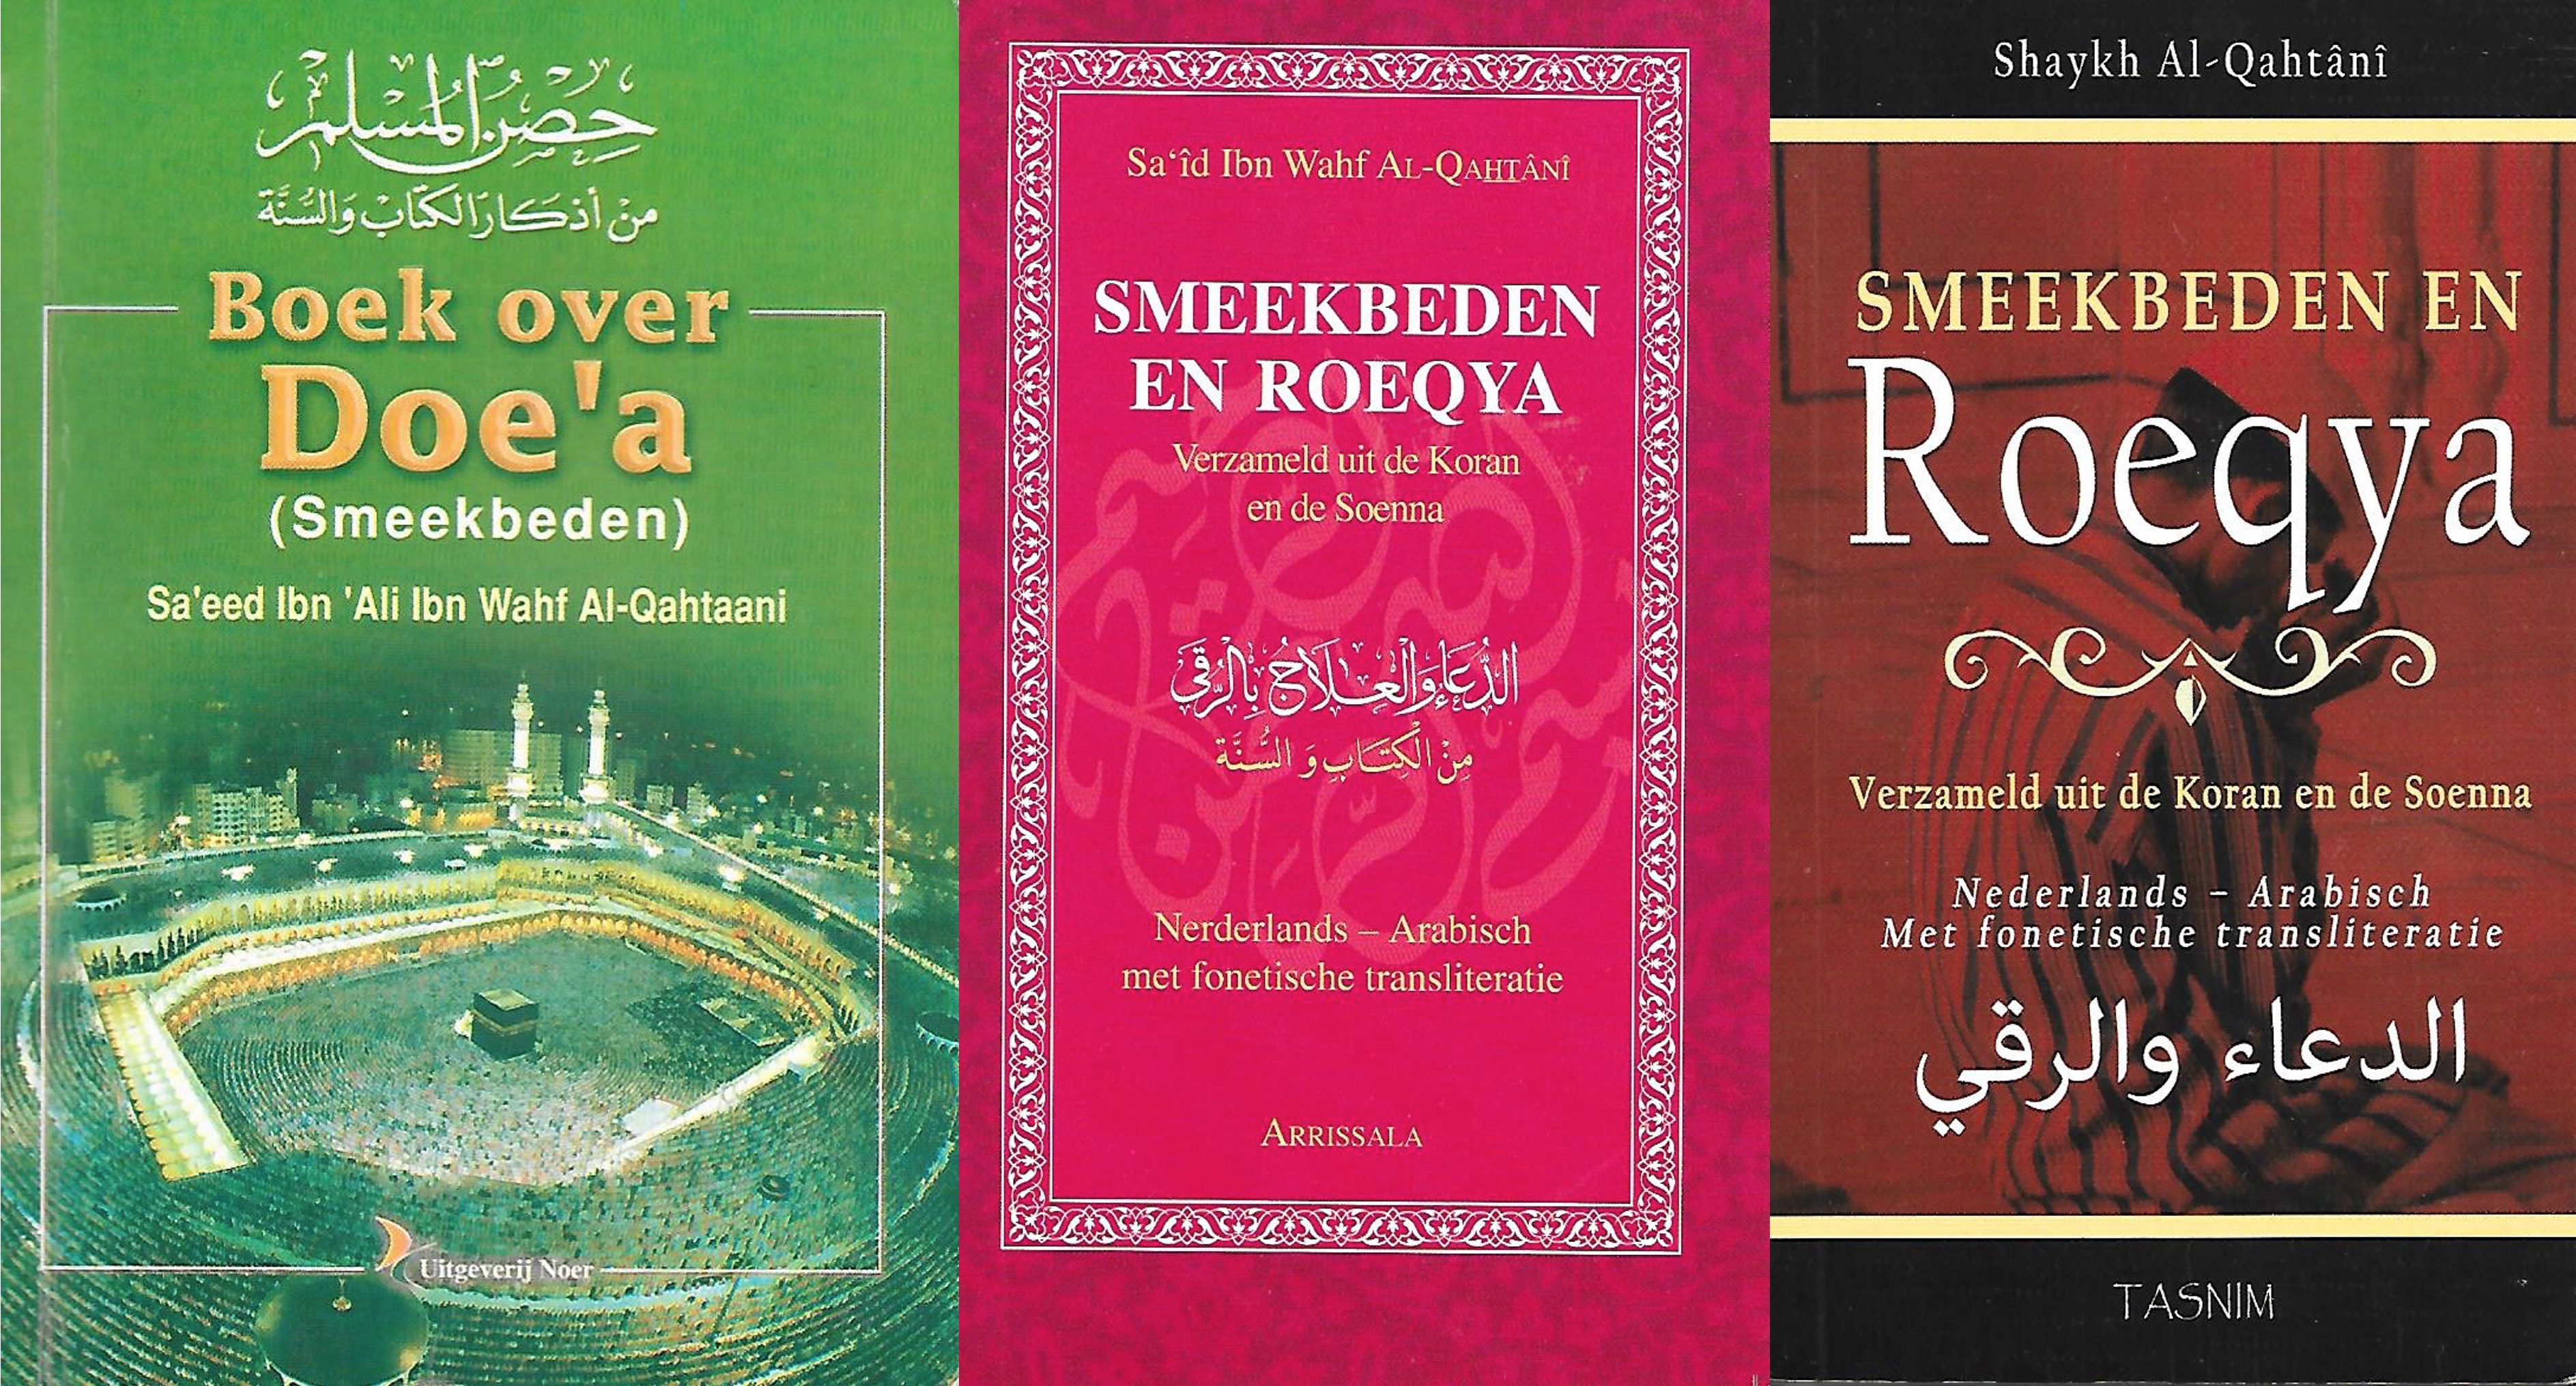 Als kinderen slecht slapen of wat vaker huilen, lezen islamitische ouders stukjes voor uit de Koran, die in dit soort boekjes beschreven staan.